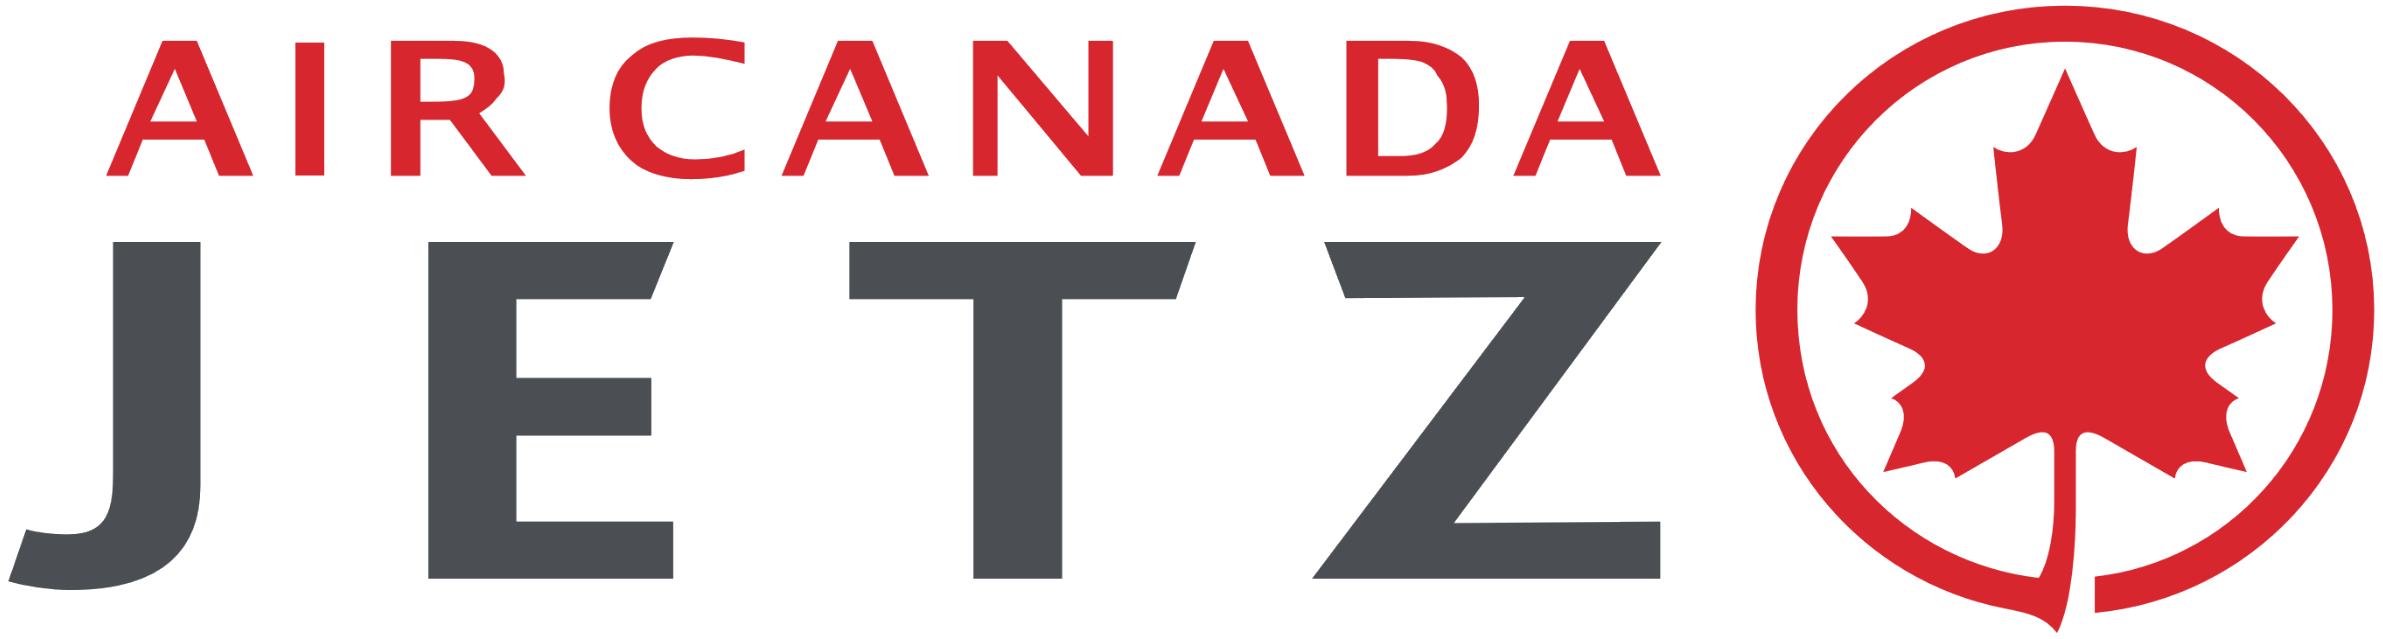 Air Canada Logo - Air Canada Jetz logo 2017.png